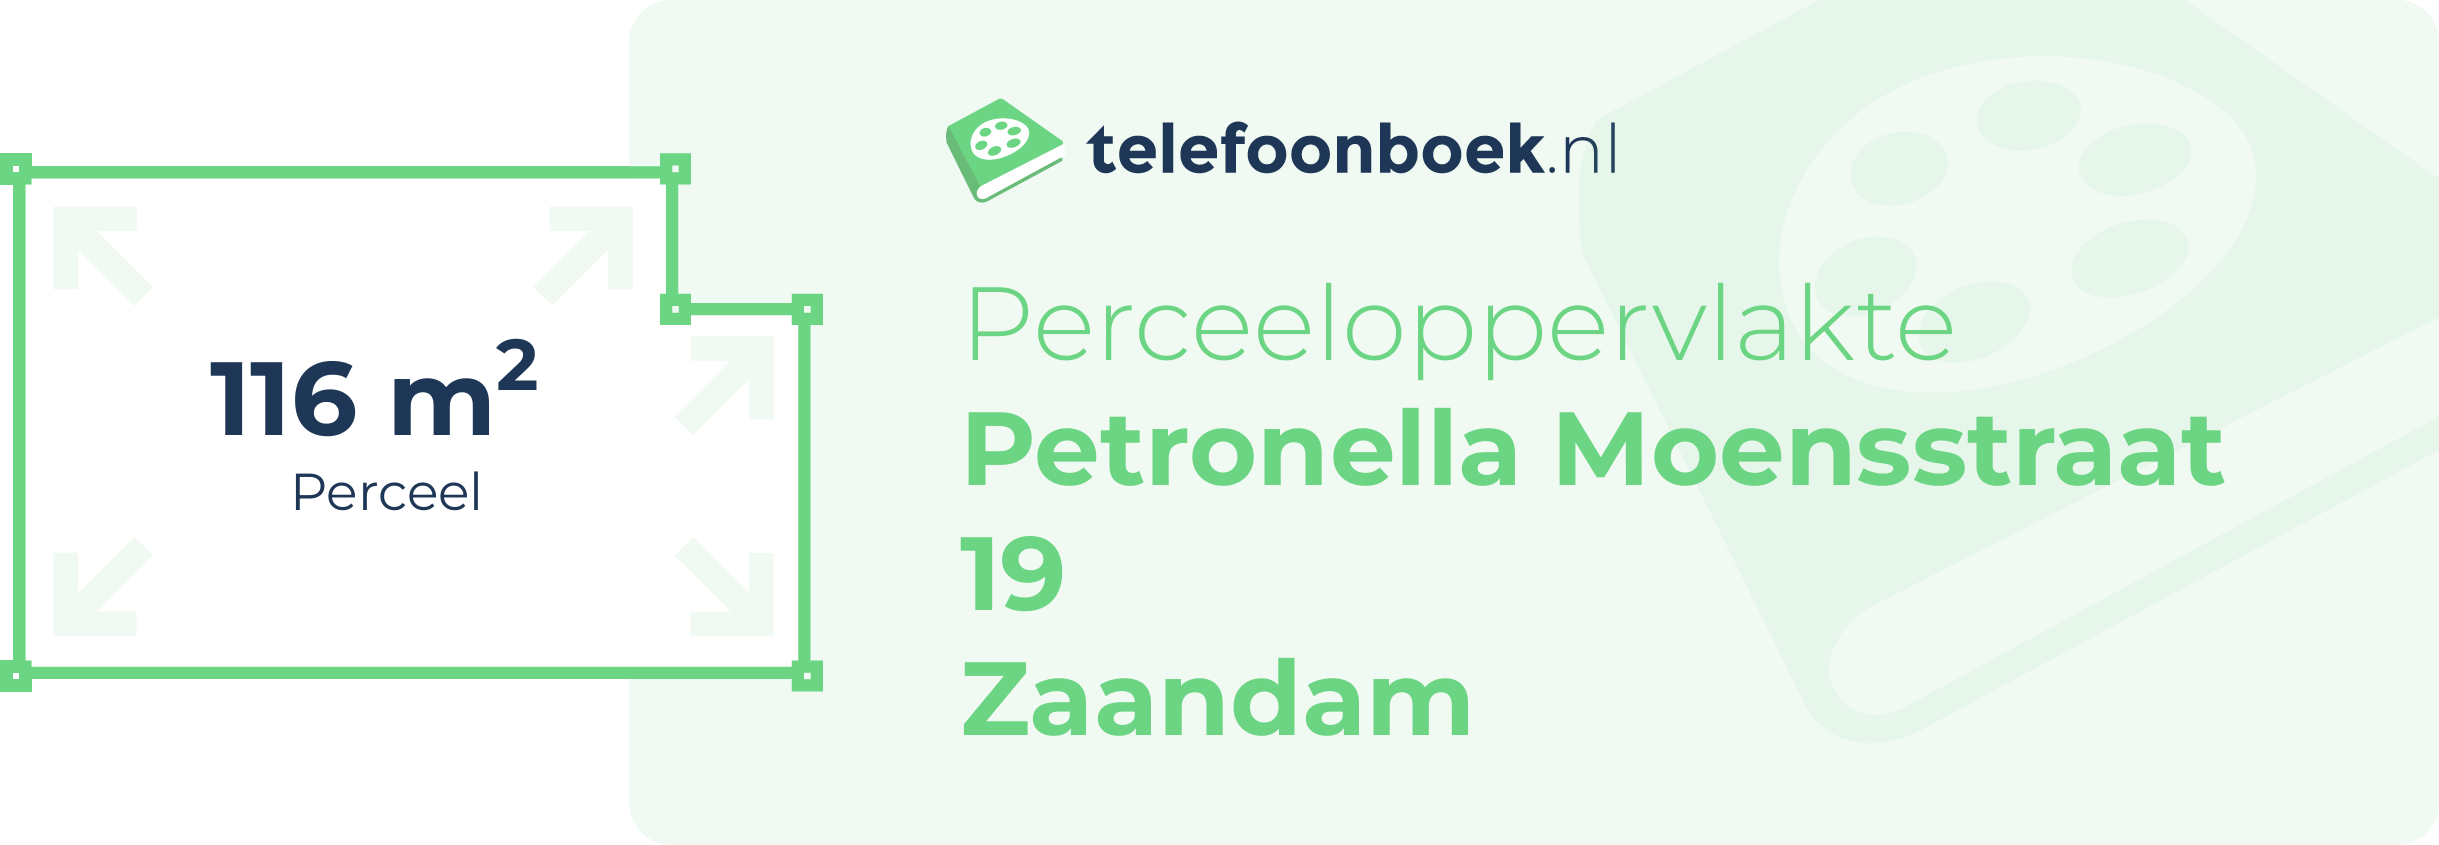 Perceeloppervlakte Petronella Moensstraat 19 Zaandam